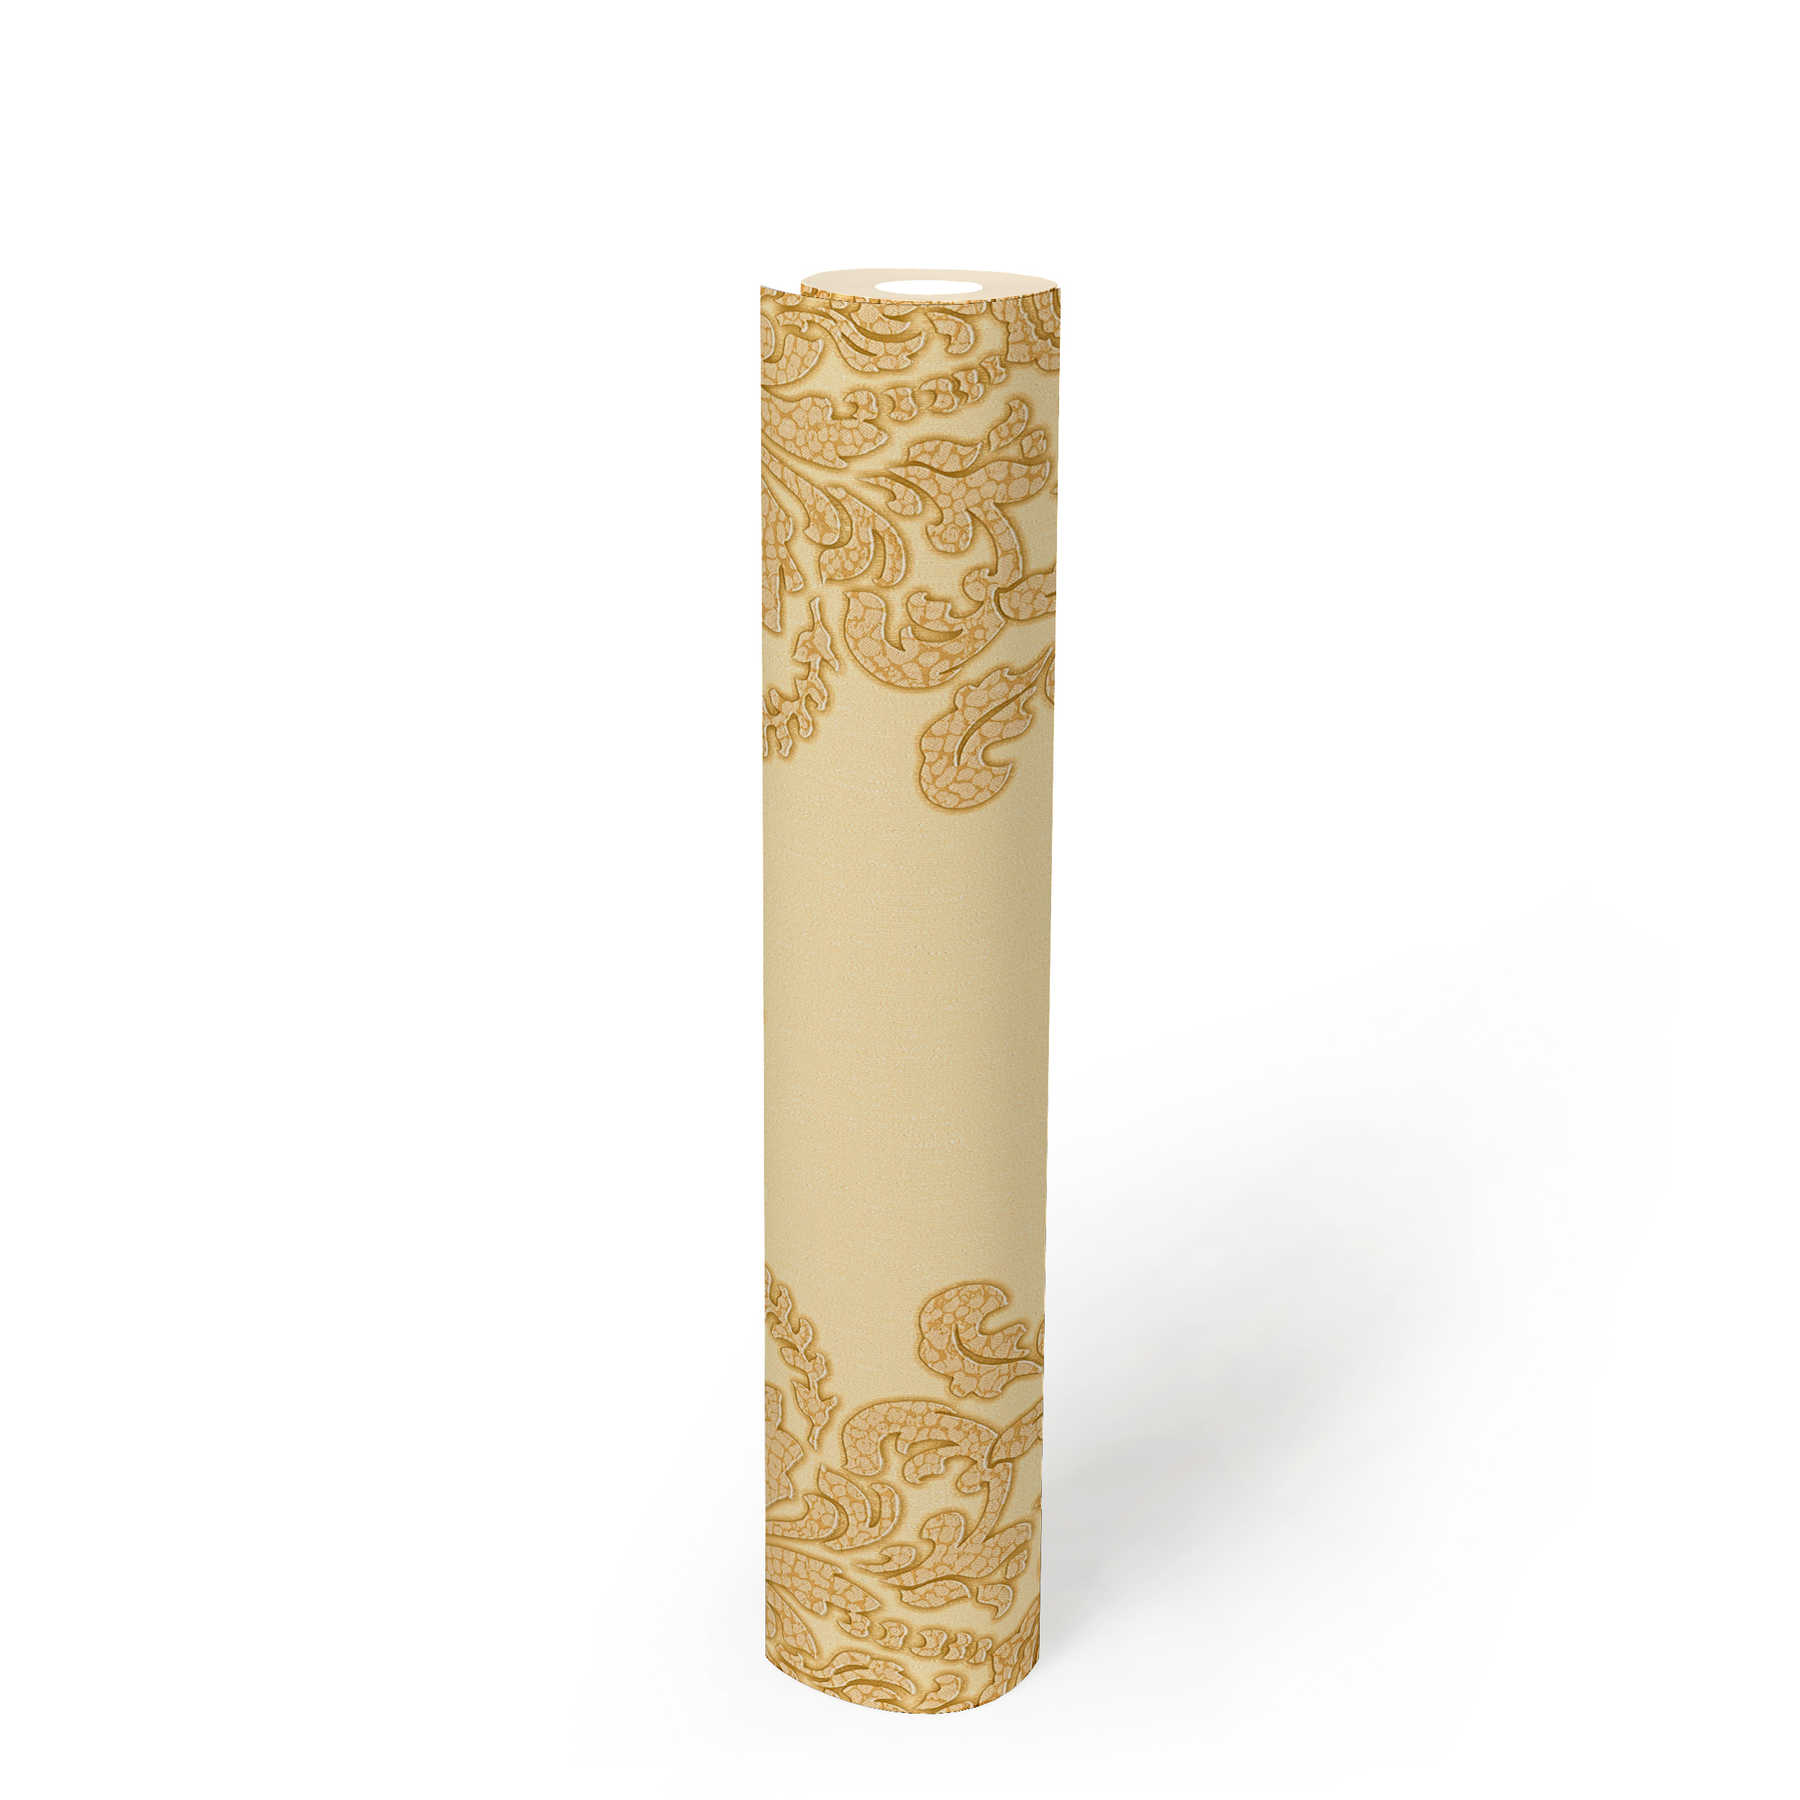             Papel pintado no tejido ornamental dorado con efecto craquelado - metálico
        